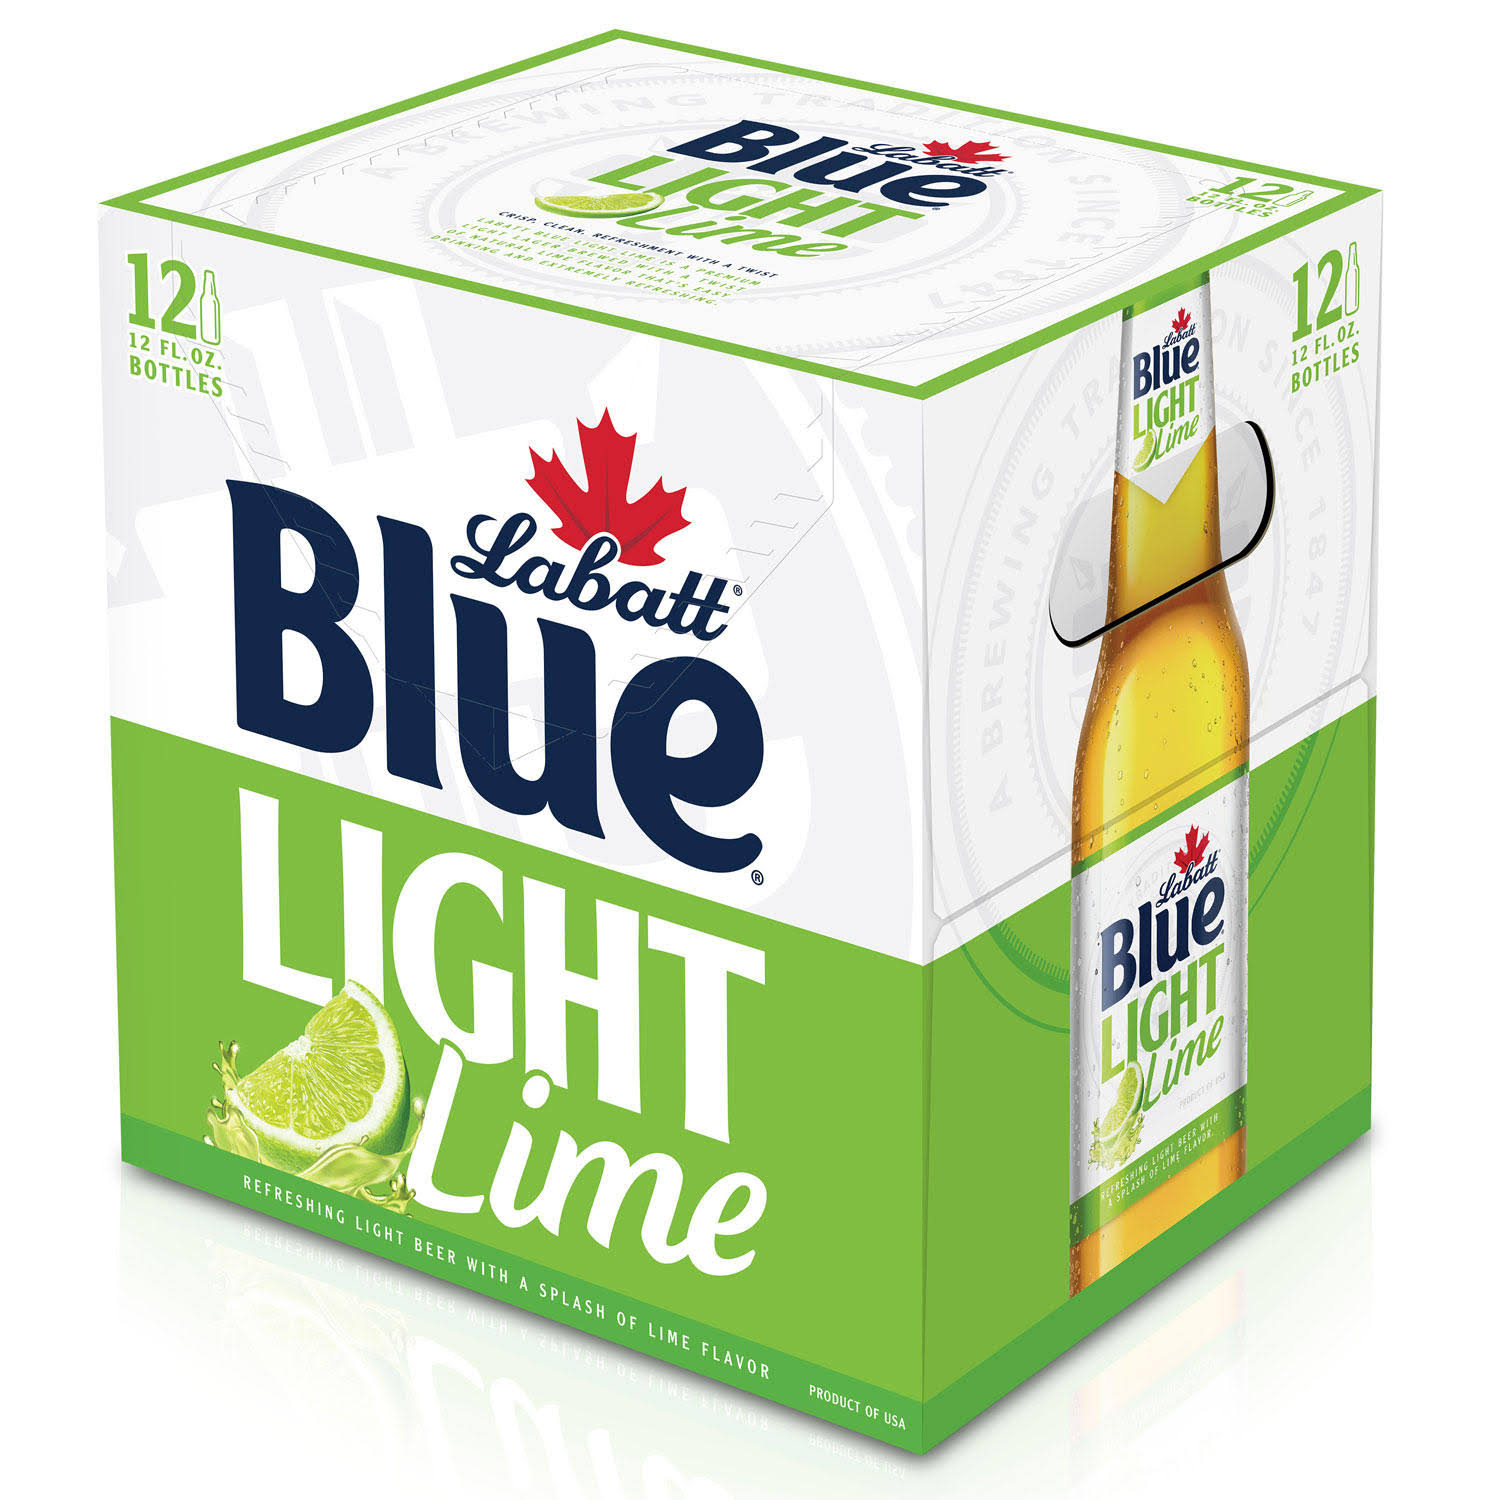 Labatt Blue Light Lime Beer - 12oz, 12 Pack